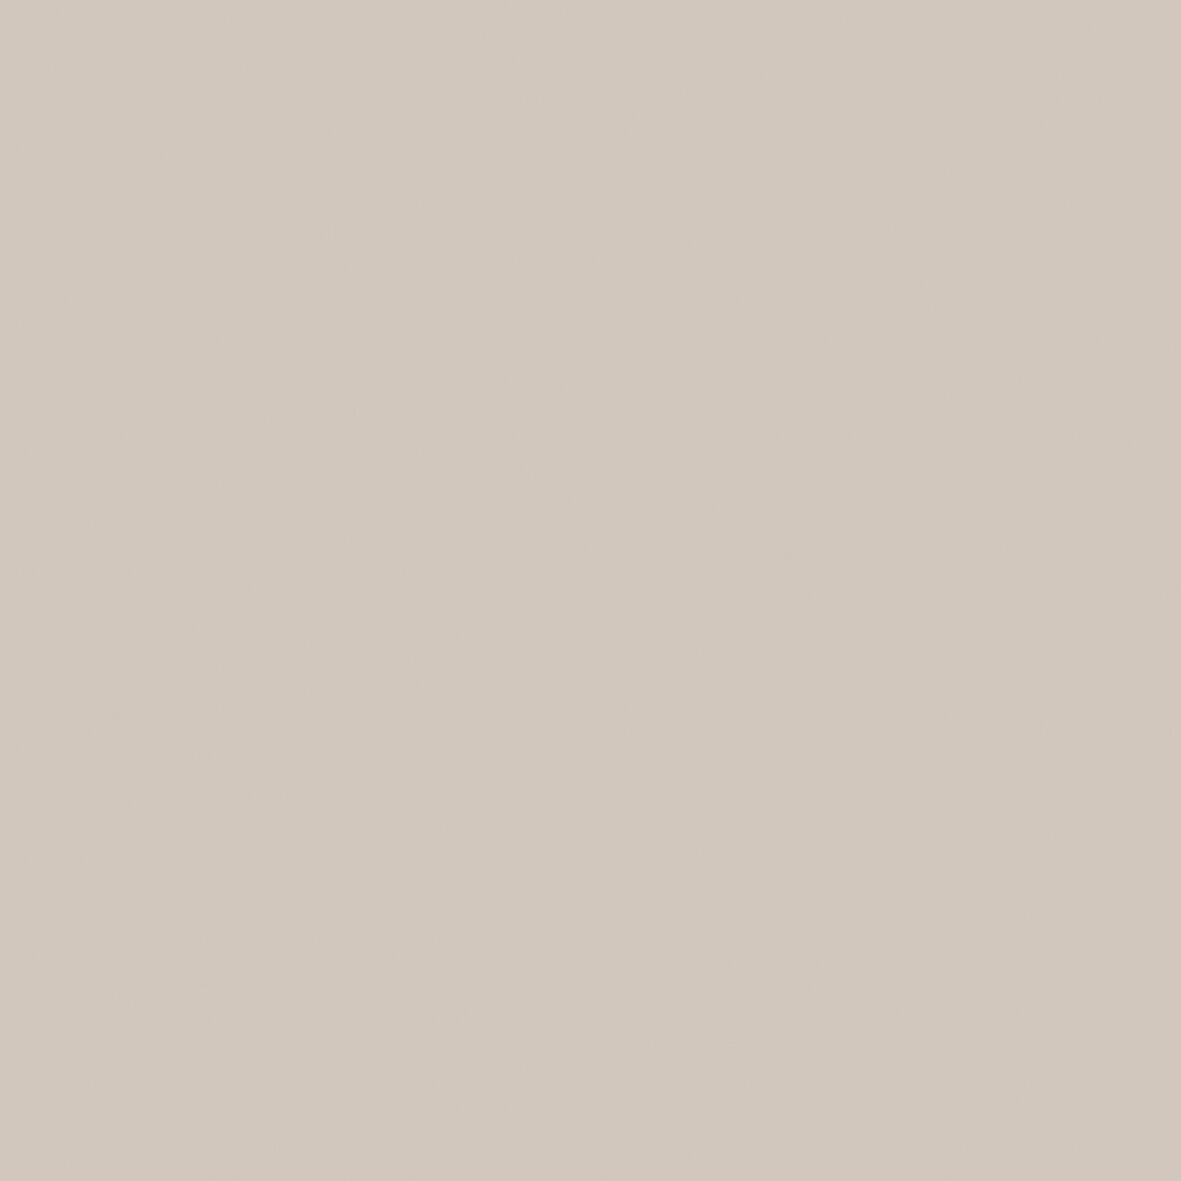 Costado delinia id mikonos marrón brillo 60x76,08 cm